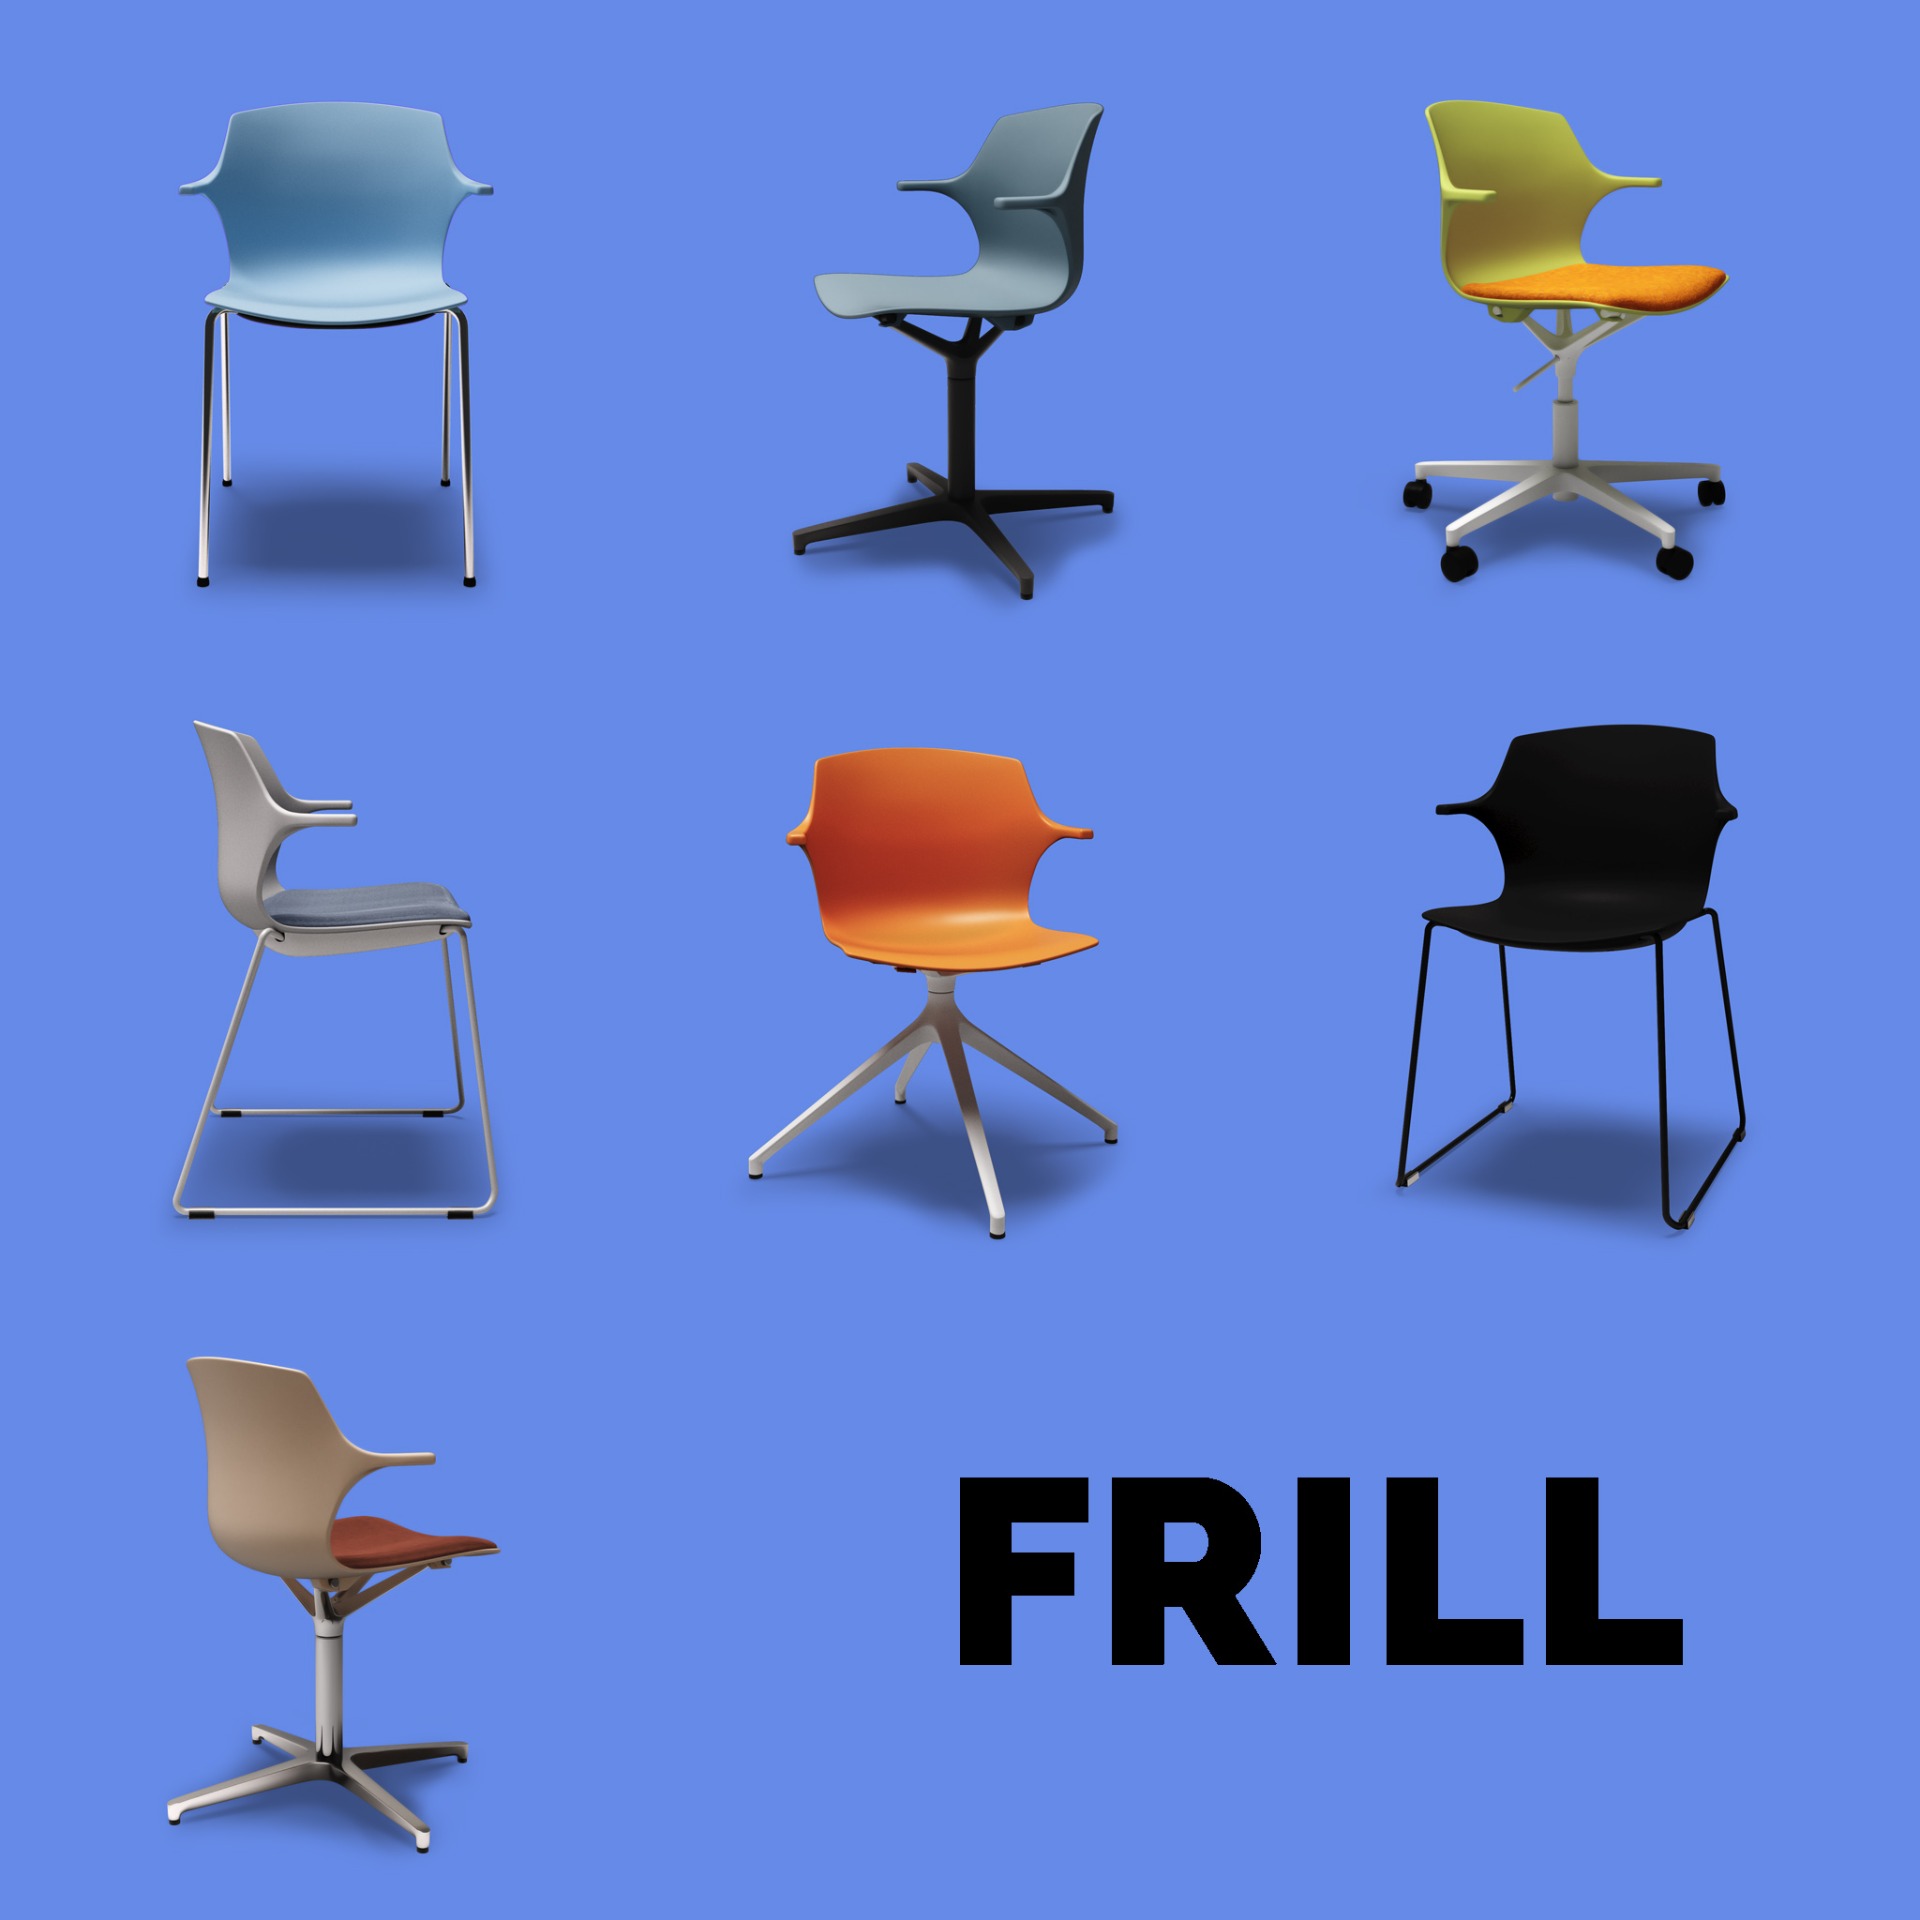 Imagen-Mobiliari de col·lectivitats model Frill-973